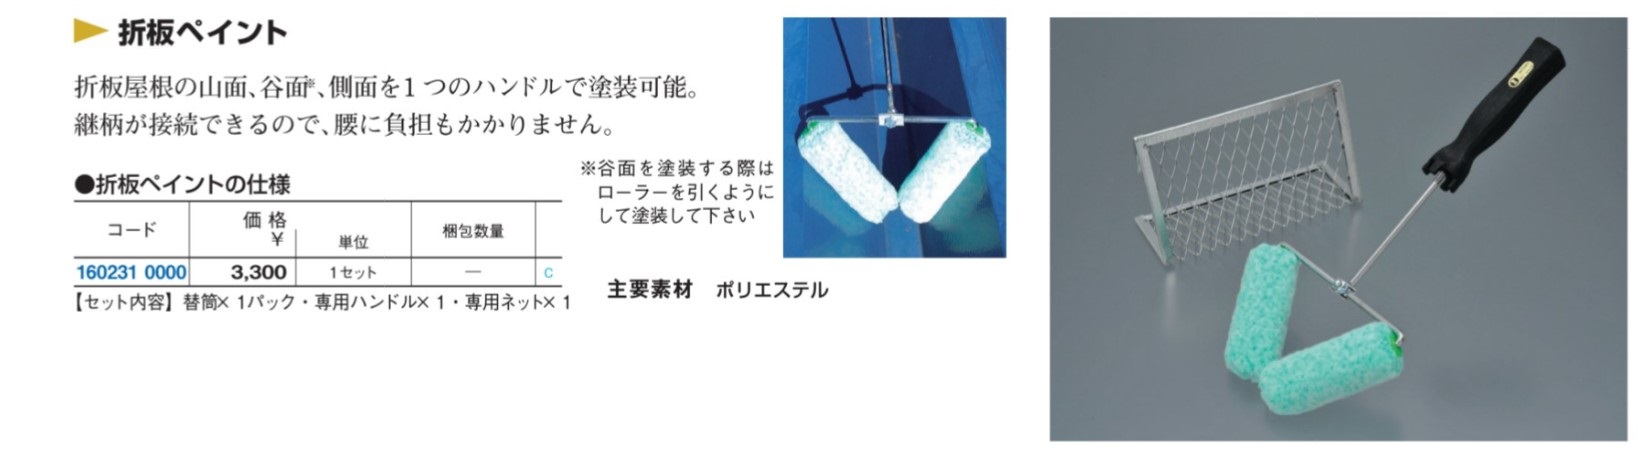 折板ペイントセット 大塚刷毛製造 MISUMI(ミスミ)